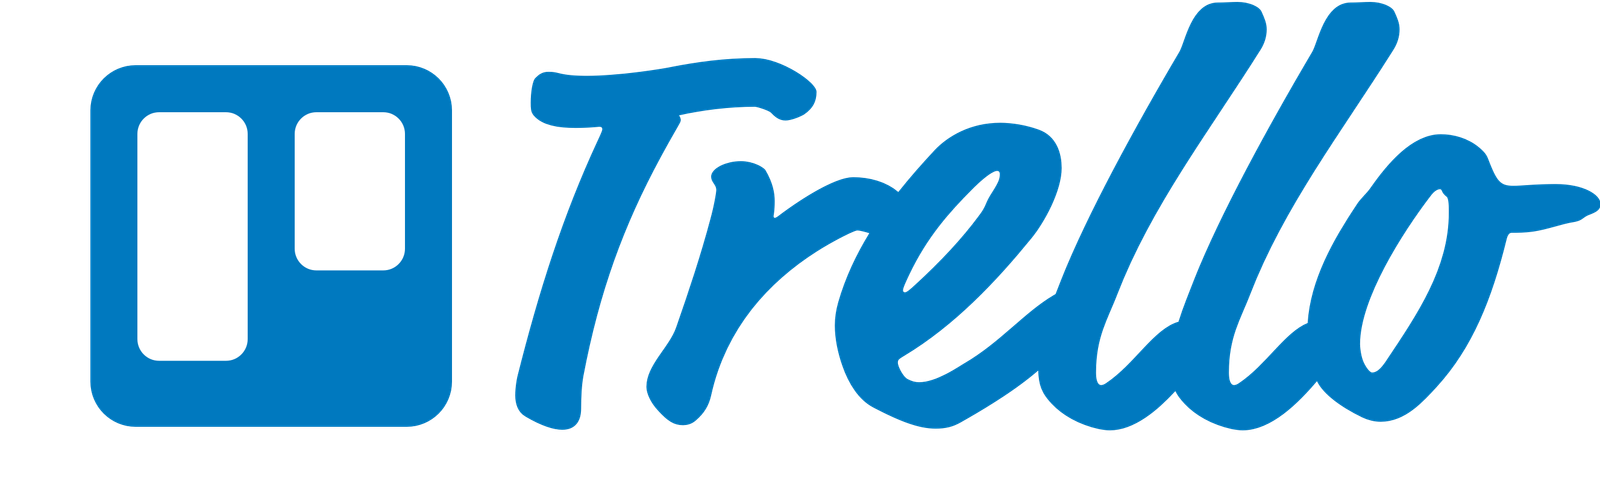 Trello logo blue